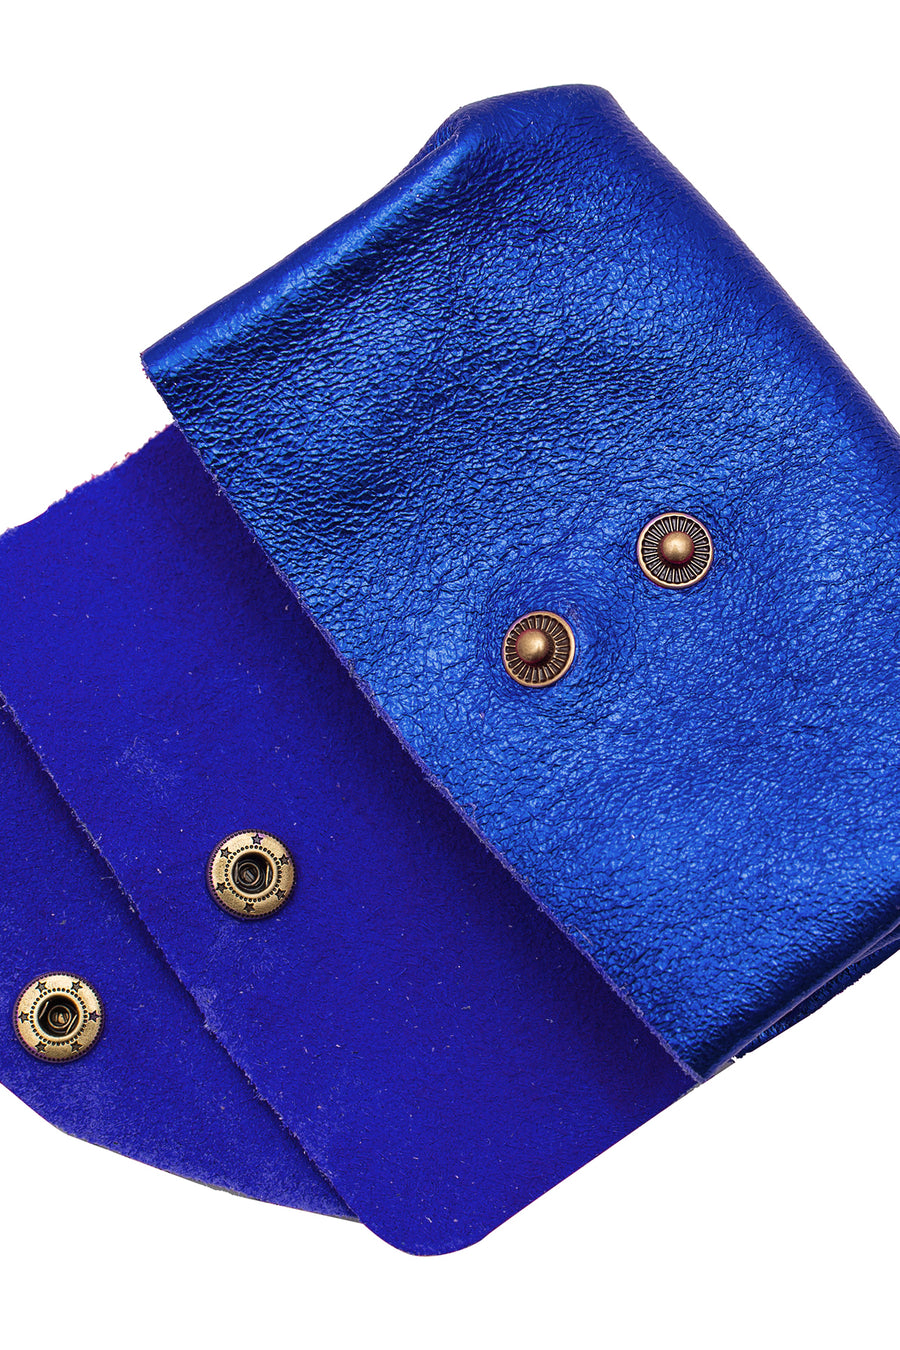 Porte-monnaie sac SUZIE METAL - Bleu roi métal